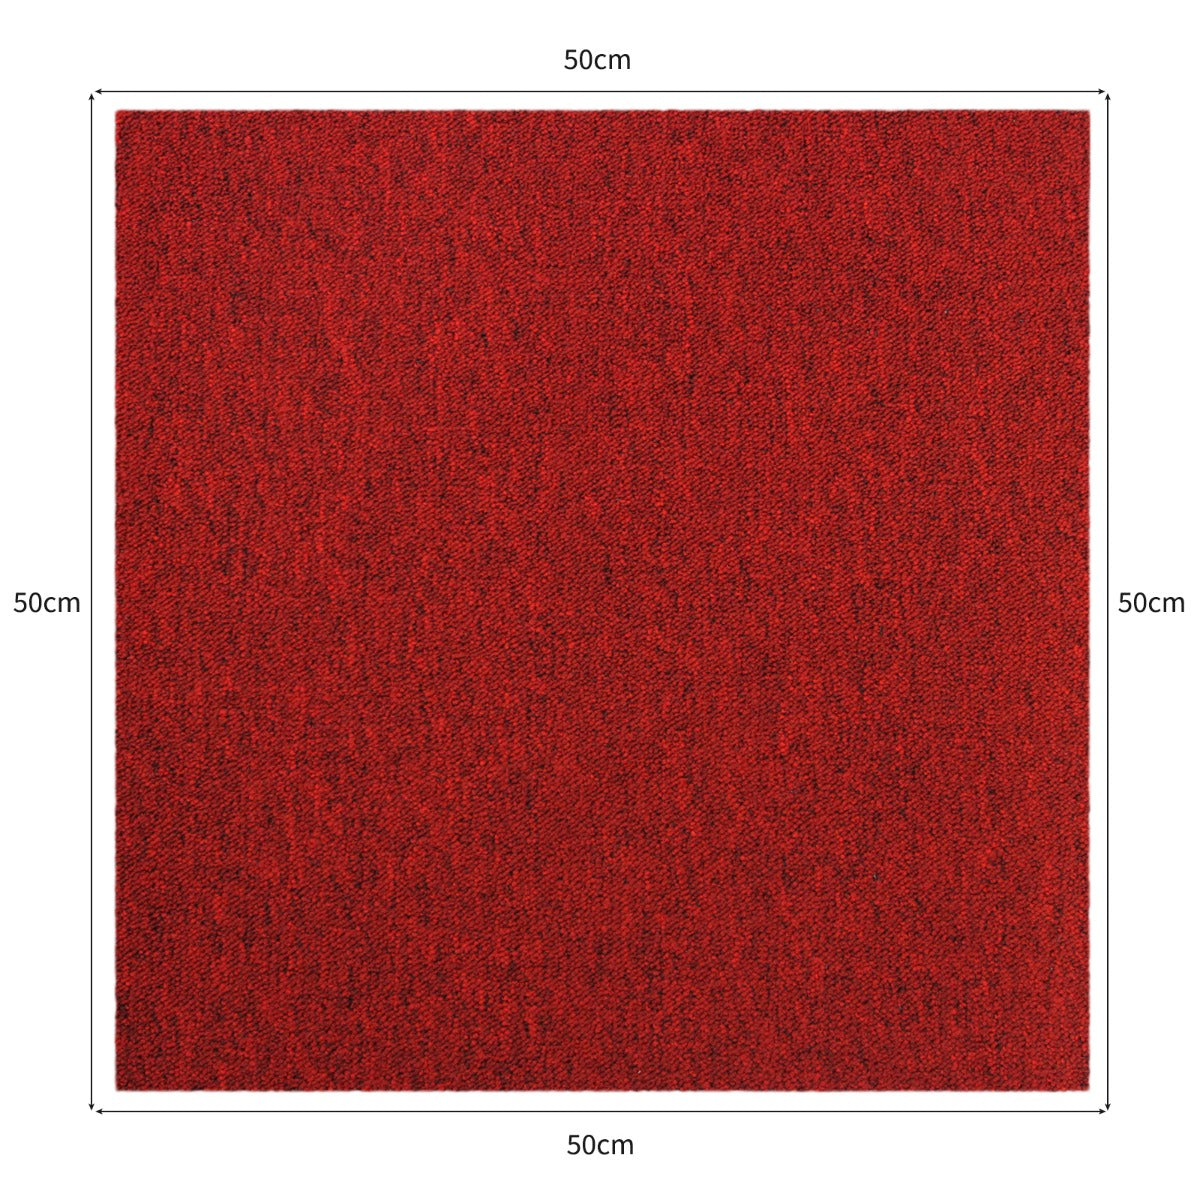 Dalle de Moquette Couleur Rouge Ecarlate, 20 Dalles de 50cm x 50cm (5m²)